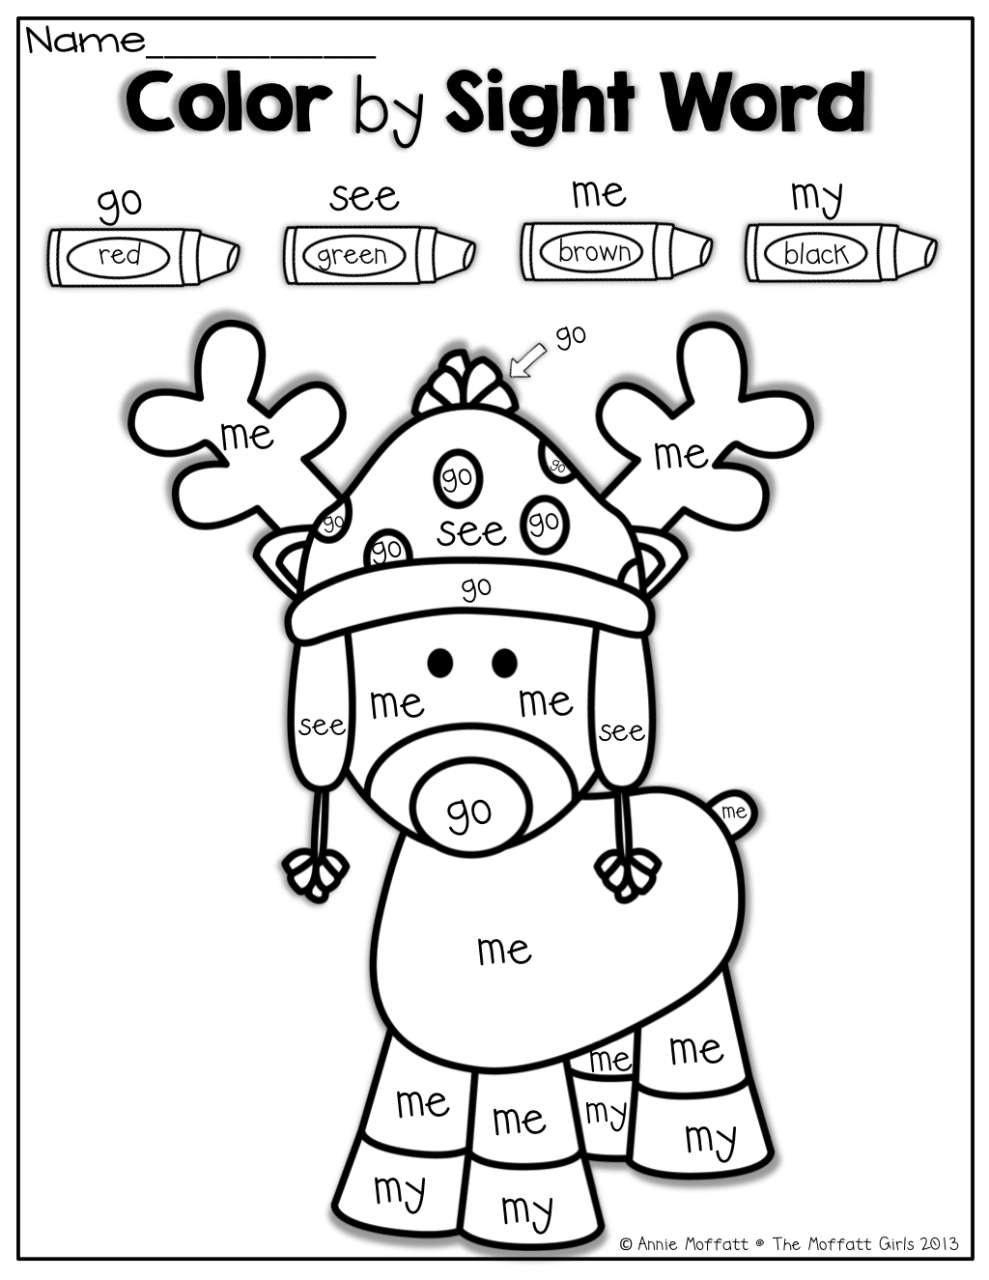 Coloring Christmas Worksheets For Kindergarten